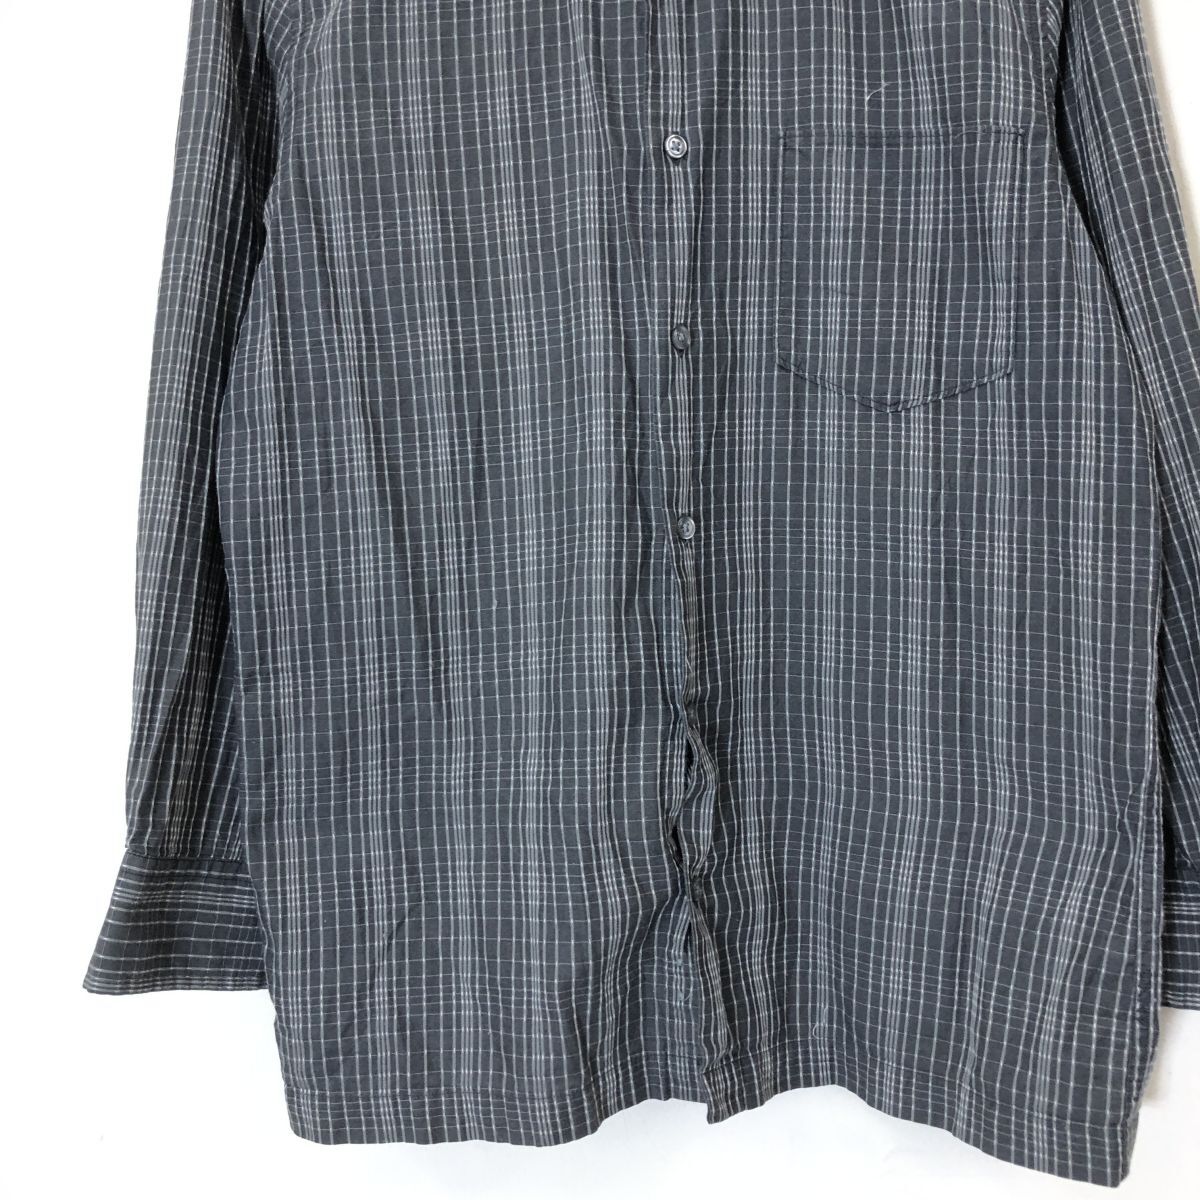 A2426-F-N* old * DKNY Donna Karan New York рубашка с длинным рукавом tops * sizeS хлопок 100 черный б/у одежда мужской весна 